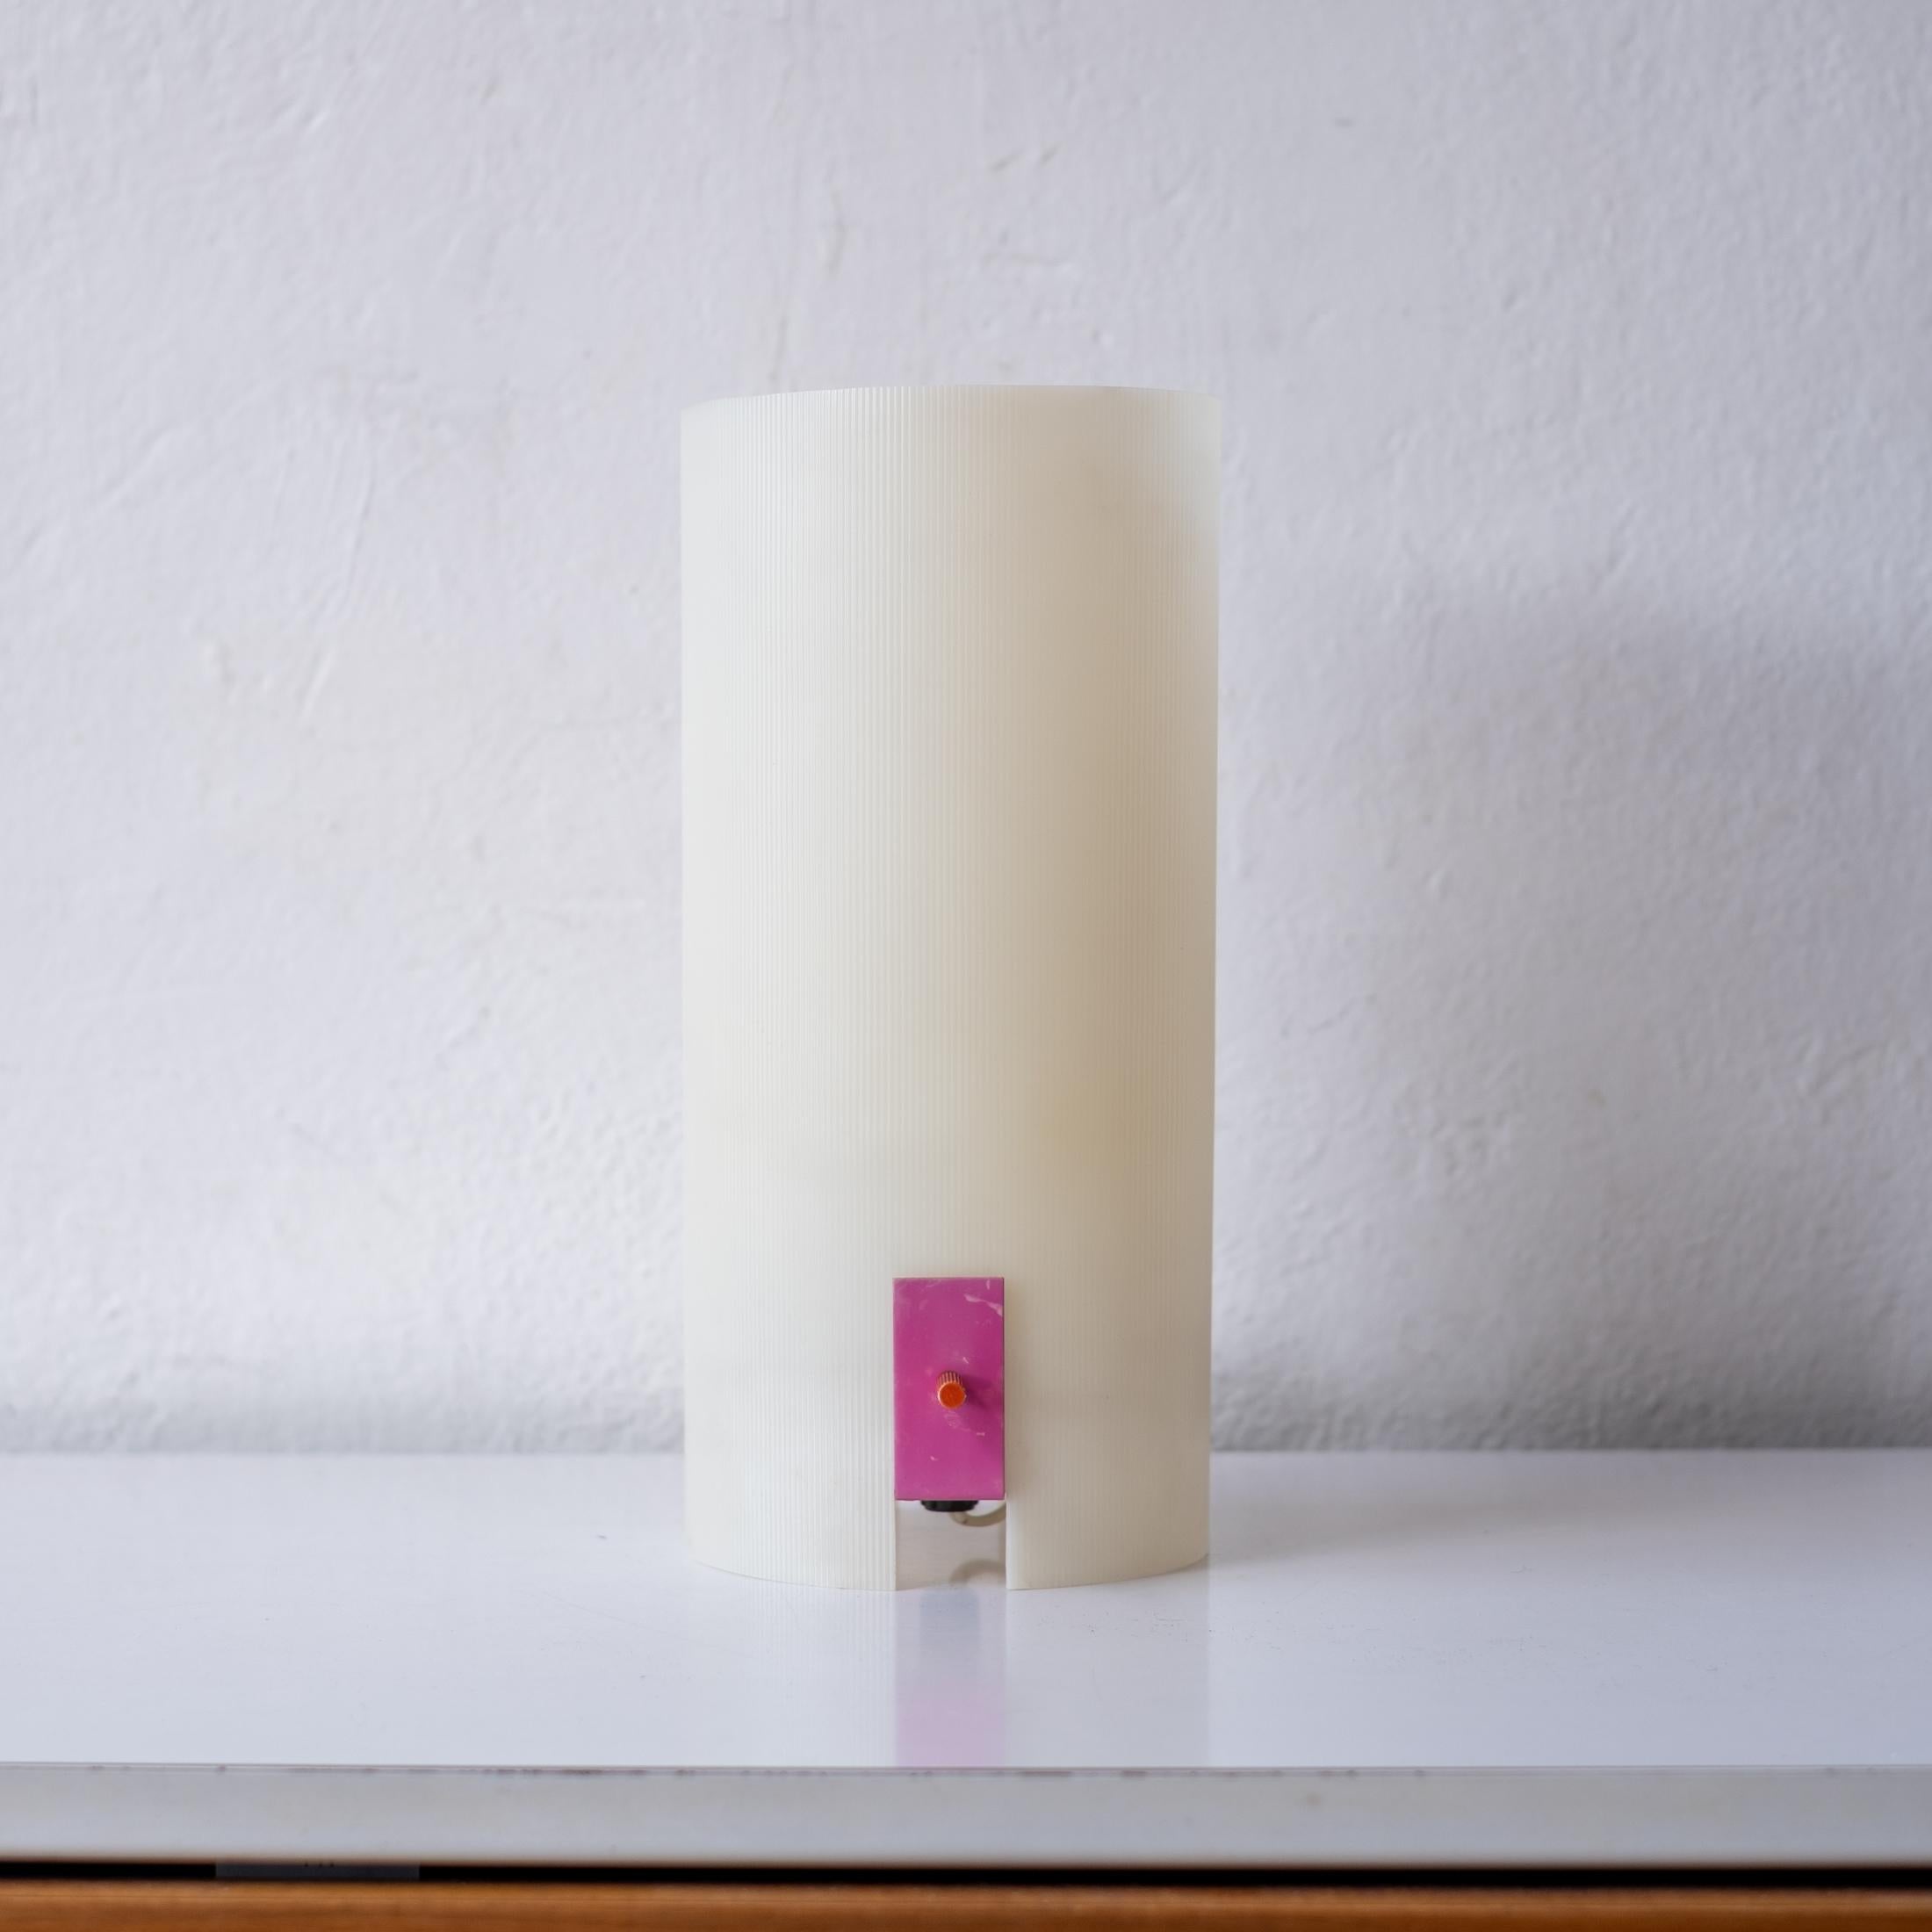 Minimalistische Lampe von Bill Curry für sein Unternehmen Design Line. Entworfen und hergestellt in El Segundo, CA in den 1960er Jahren. Harter extrudierter gerippter Kunststoff mit emailliertem rosa Metallrahmen und orangefarbenem Metallschalter.